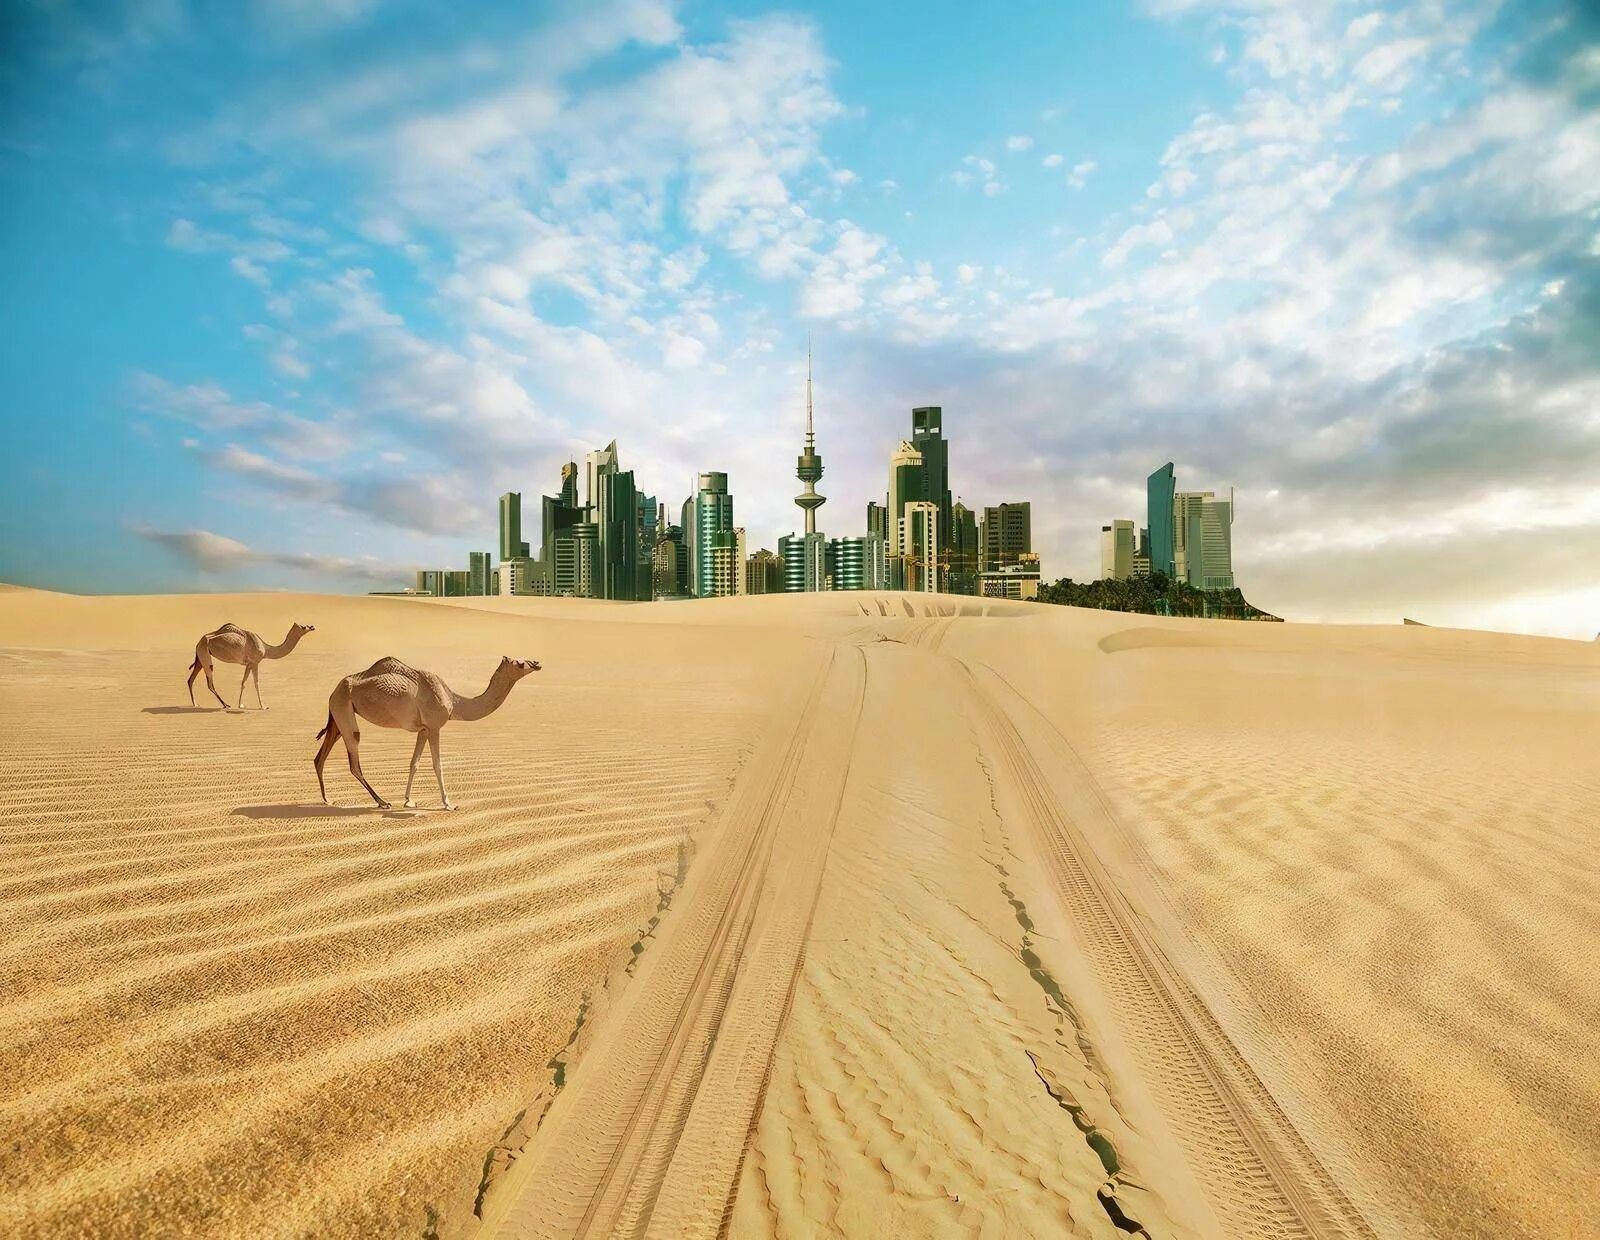 Дубай пустыня. Сулайбия Кувейт. Пустыня Абу Даби. Аравийская пустыня ОАЭ.